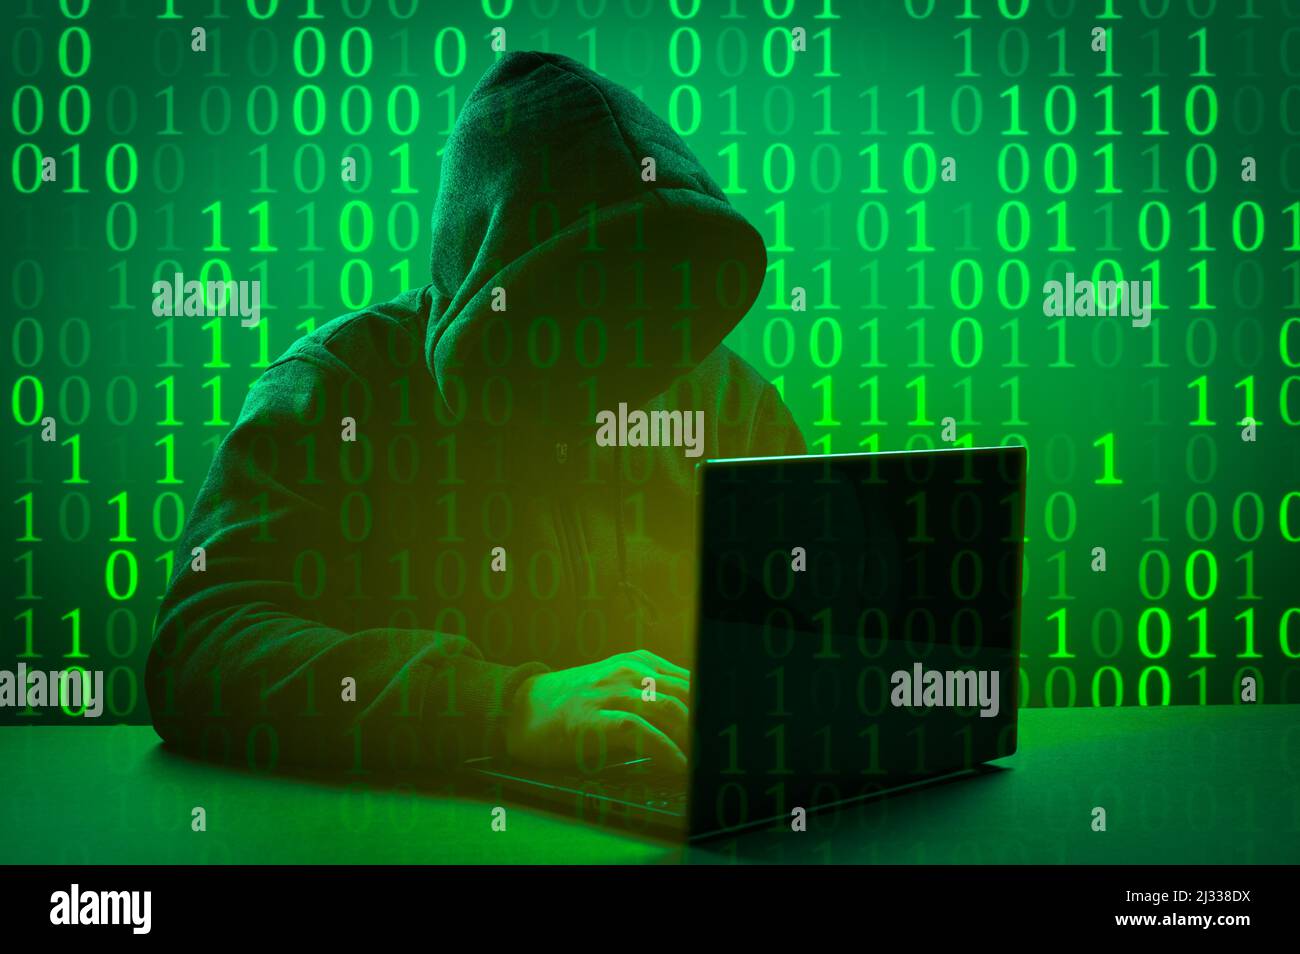 Tấn công của Hacker đang diễn ra và chỉ có bạn mới có thể ngăn chặn được. Với tên trộm mã hóa trên bàn phím và nền màu xanh lá cây, hãy chuẩn bị sẵn sàng cho những thử thách kịch tính đang chờ đón. Hãy dùng trí thông minh của bạn để tìm ra cách đối phó và tiêu diệt Hacker của họ!